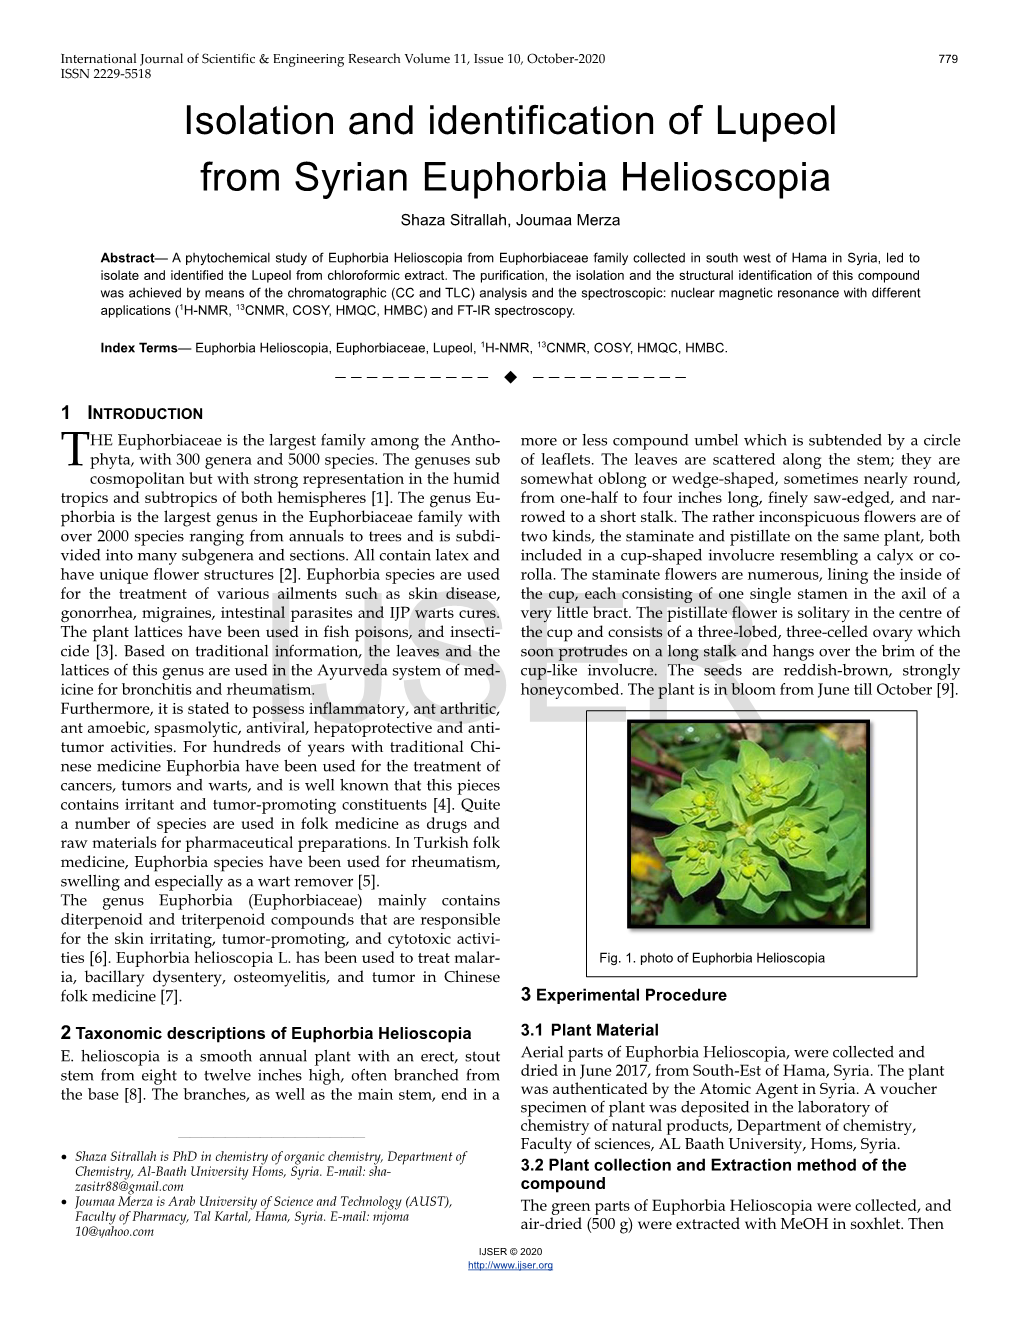 Isolation and Identification of Lupeol from Syrian Euphorbia Helioscopia Shaza Sitrallah, Joumaa Merza